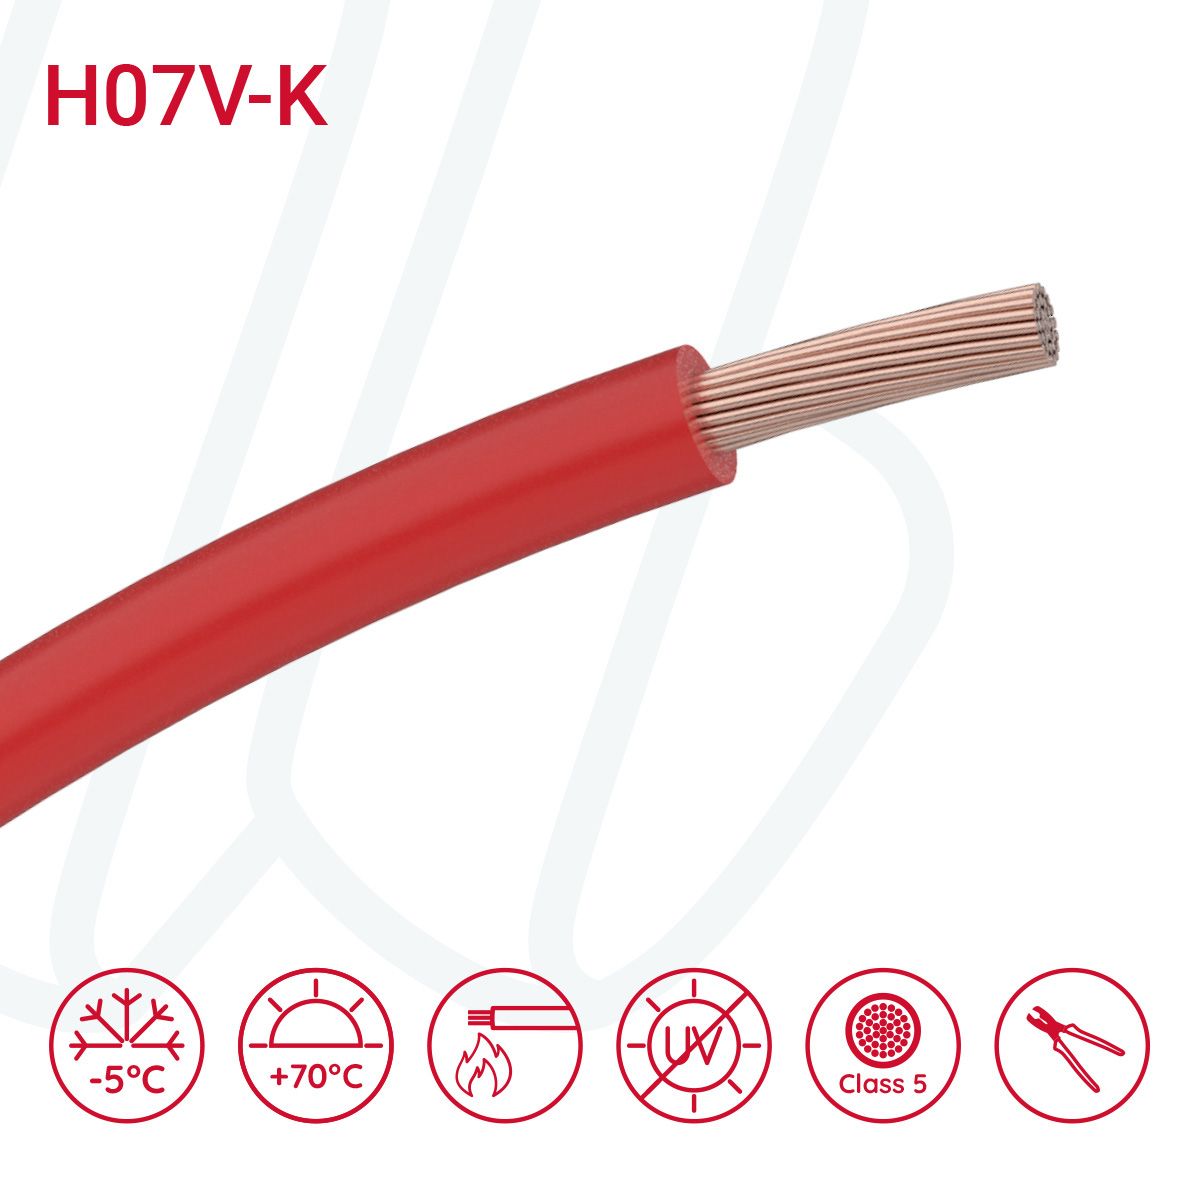 Провід монтажний гнучкий H07V-K 35 мм² червоний, 01, 35